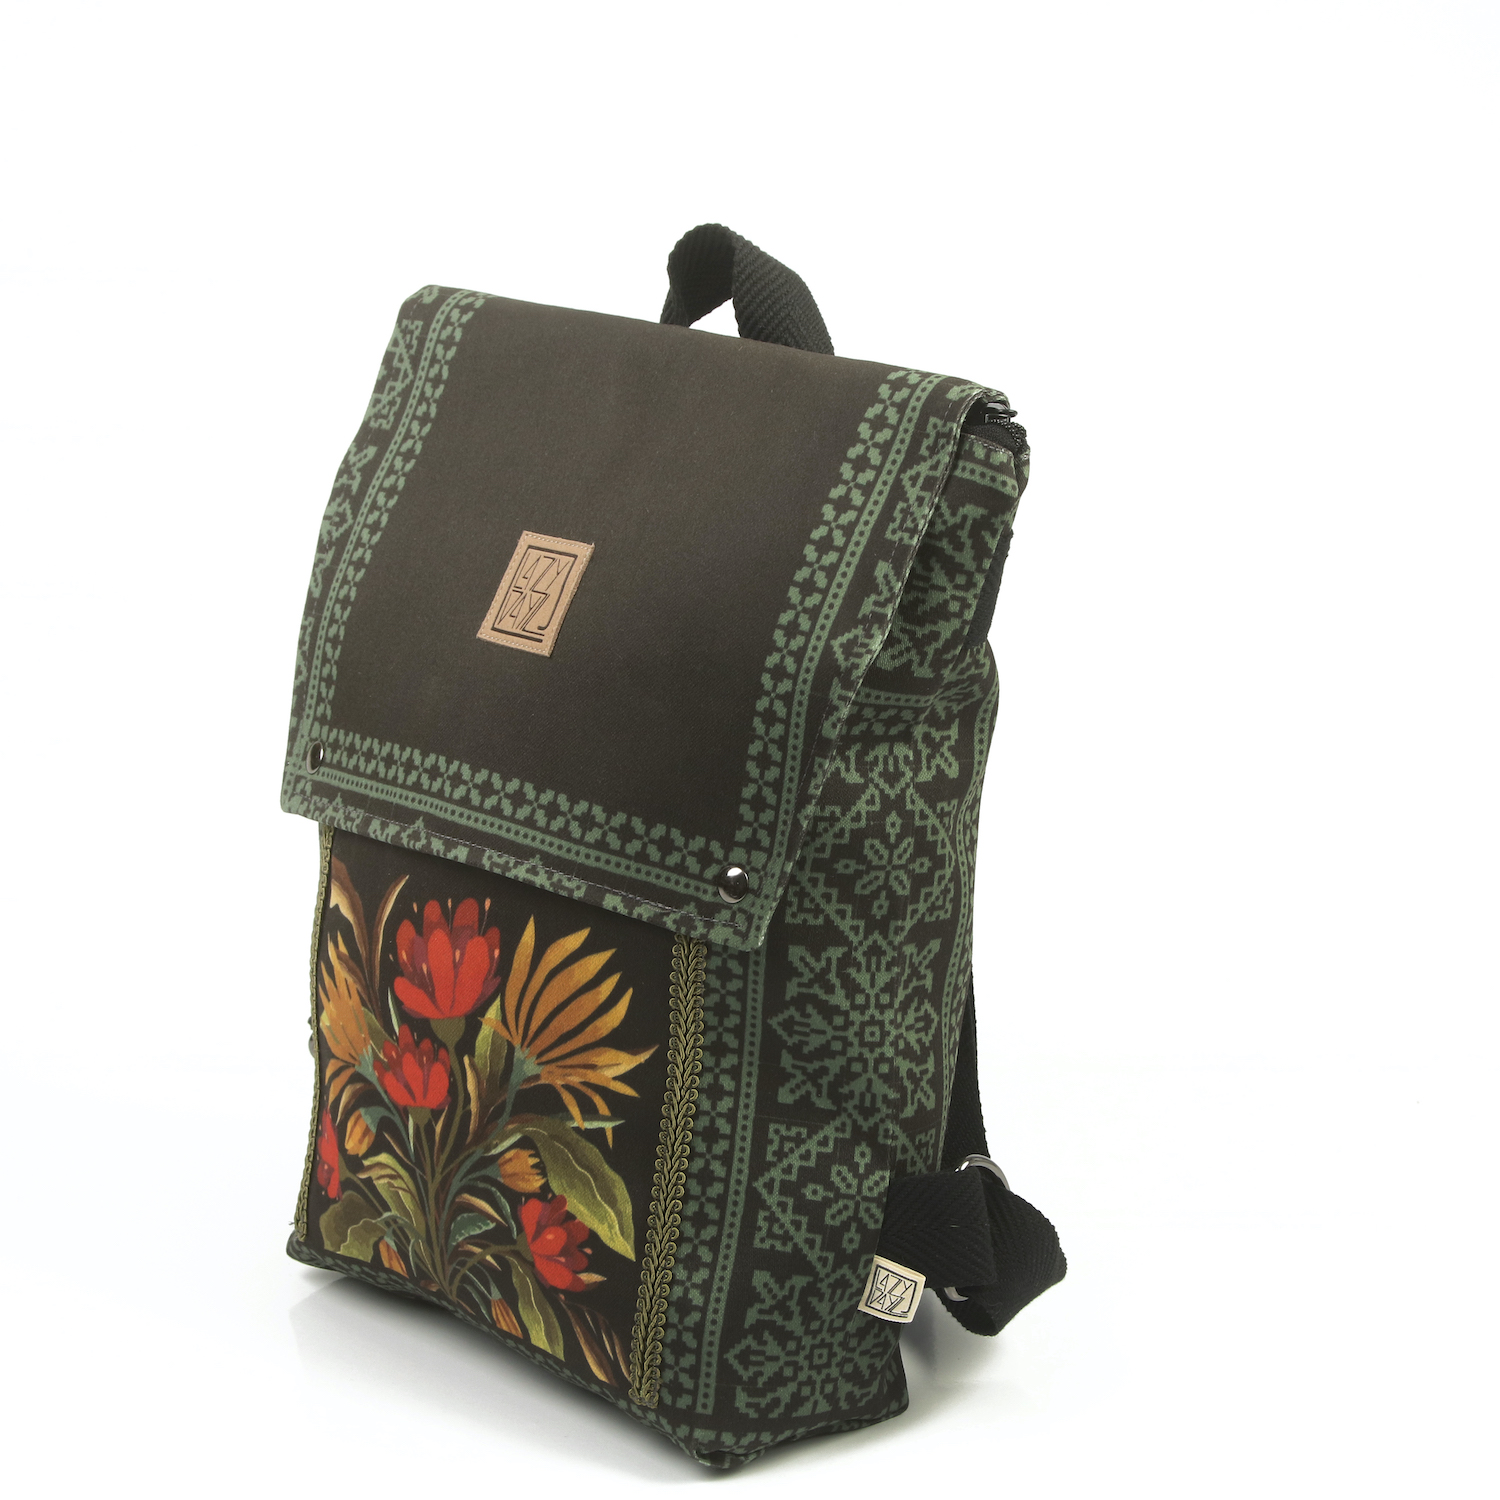 LazyDayz-Designs-Backpack-γυναικείος-σάκος-πλάτης-χειροποίητος bb0707b